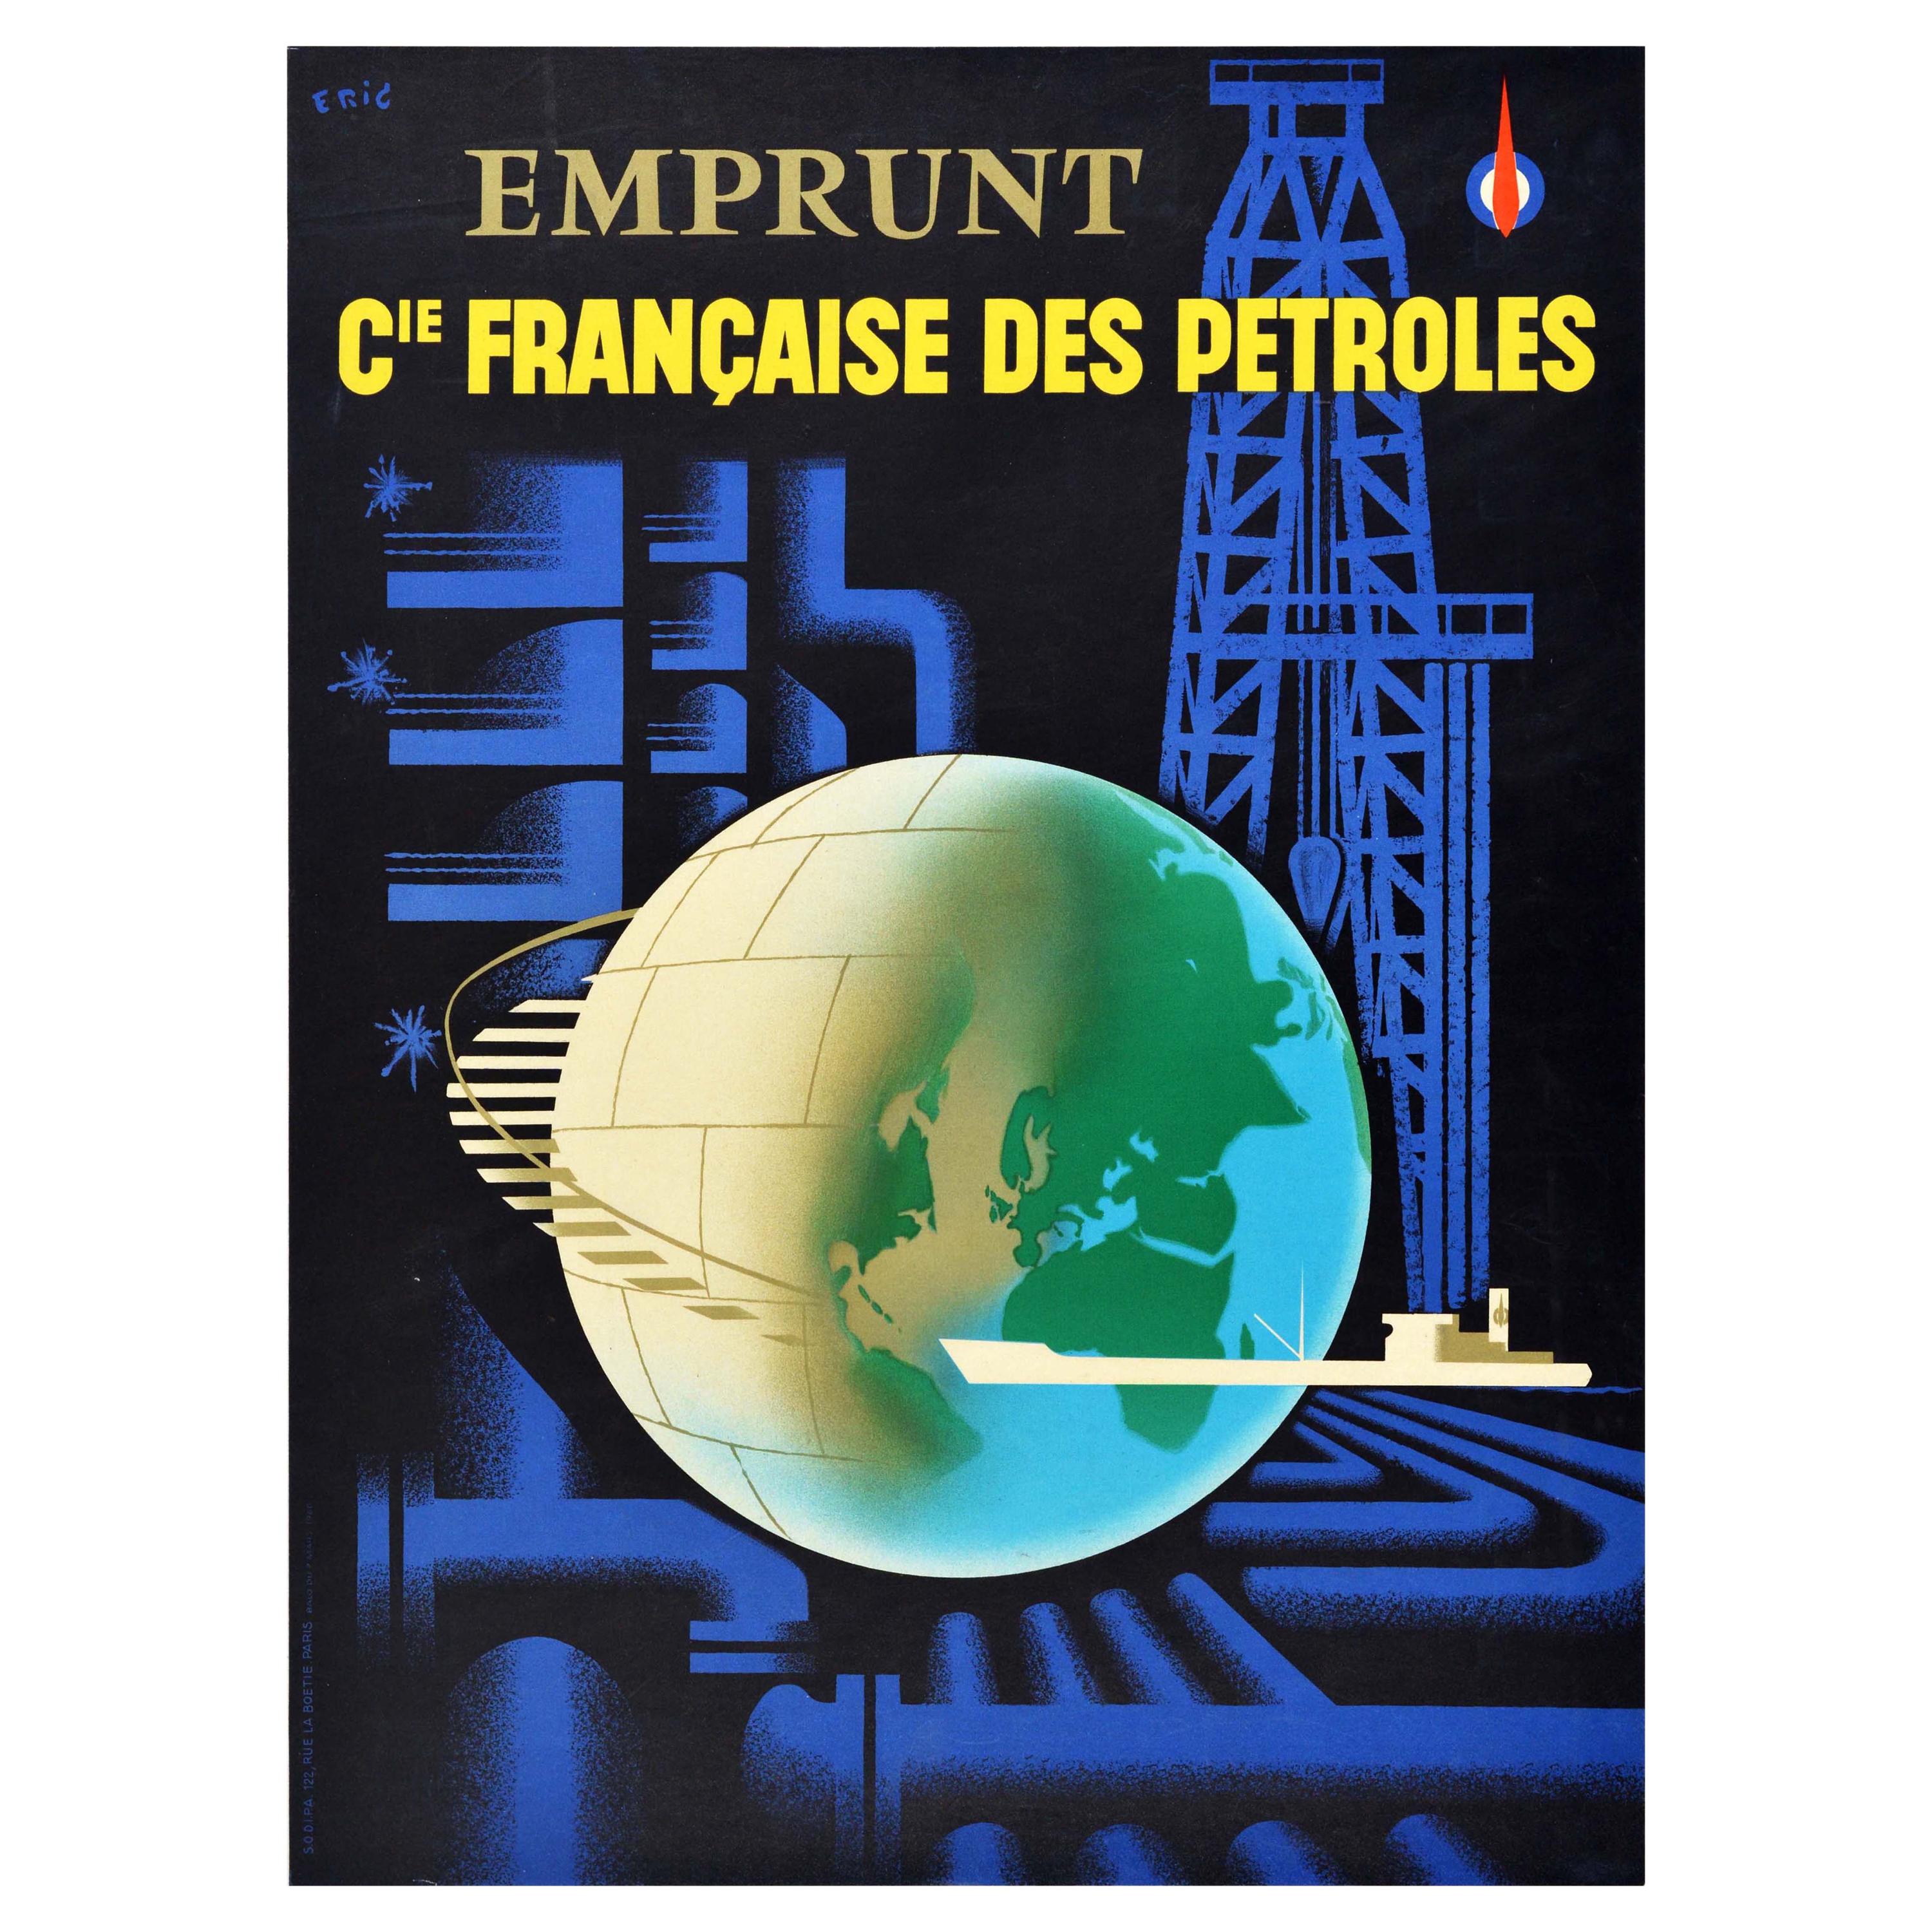 Affiche rétro originale, Compagnie francaise des pétroles, Emprunt pétrolier français, Pétrole, Gas, CFP